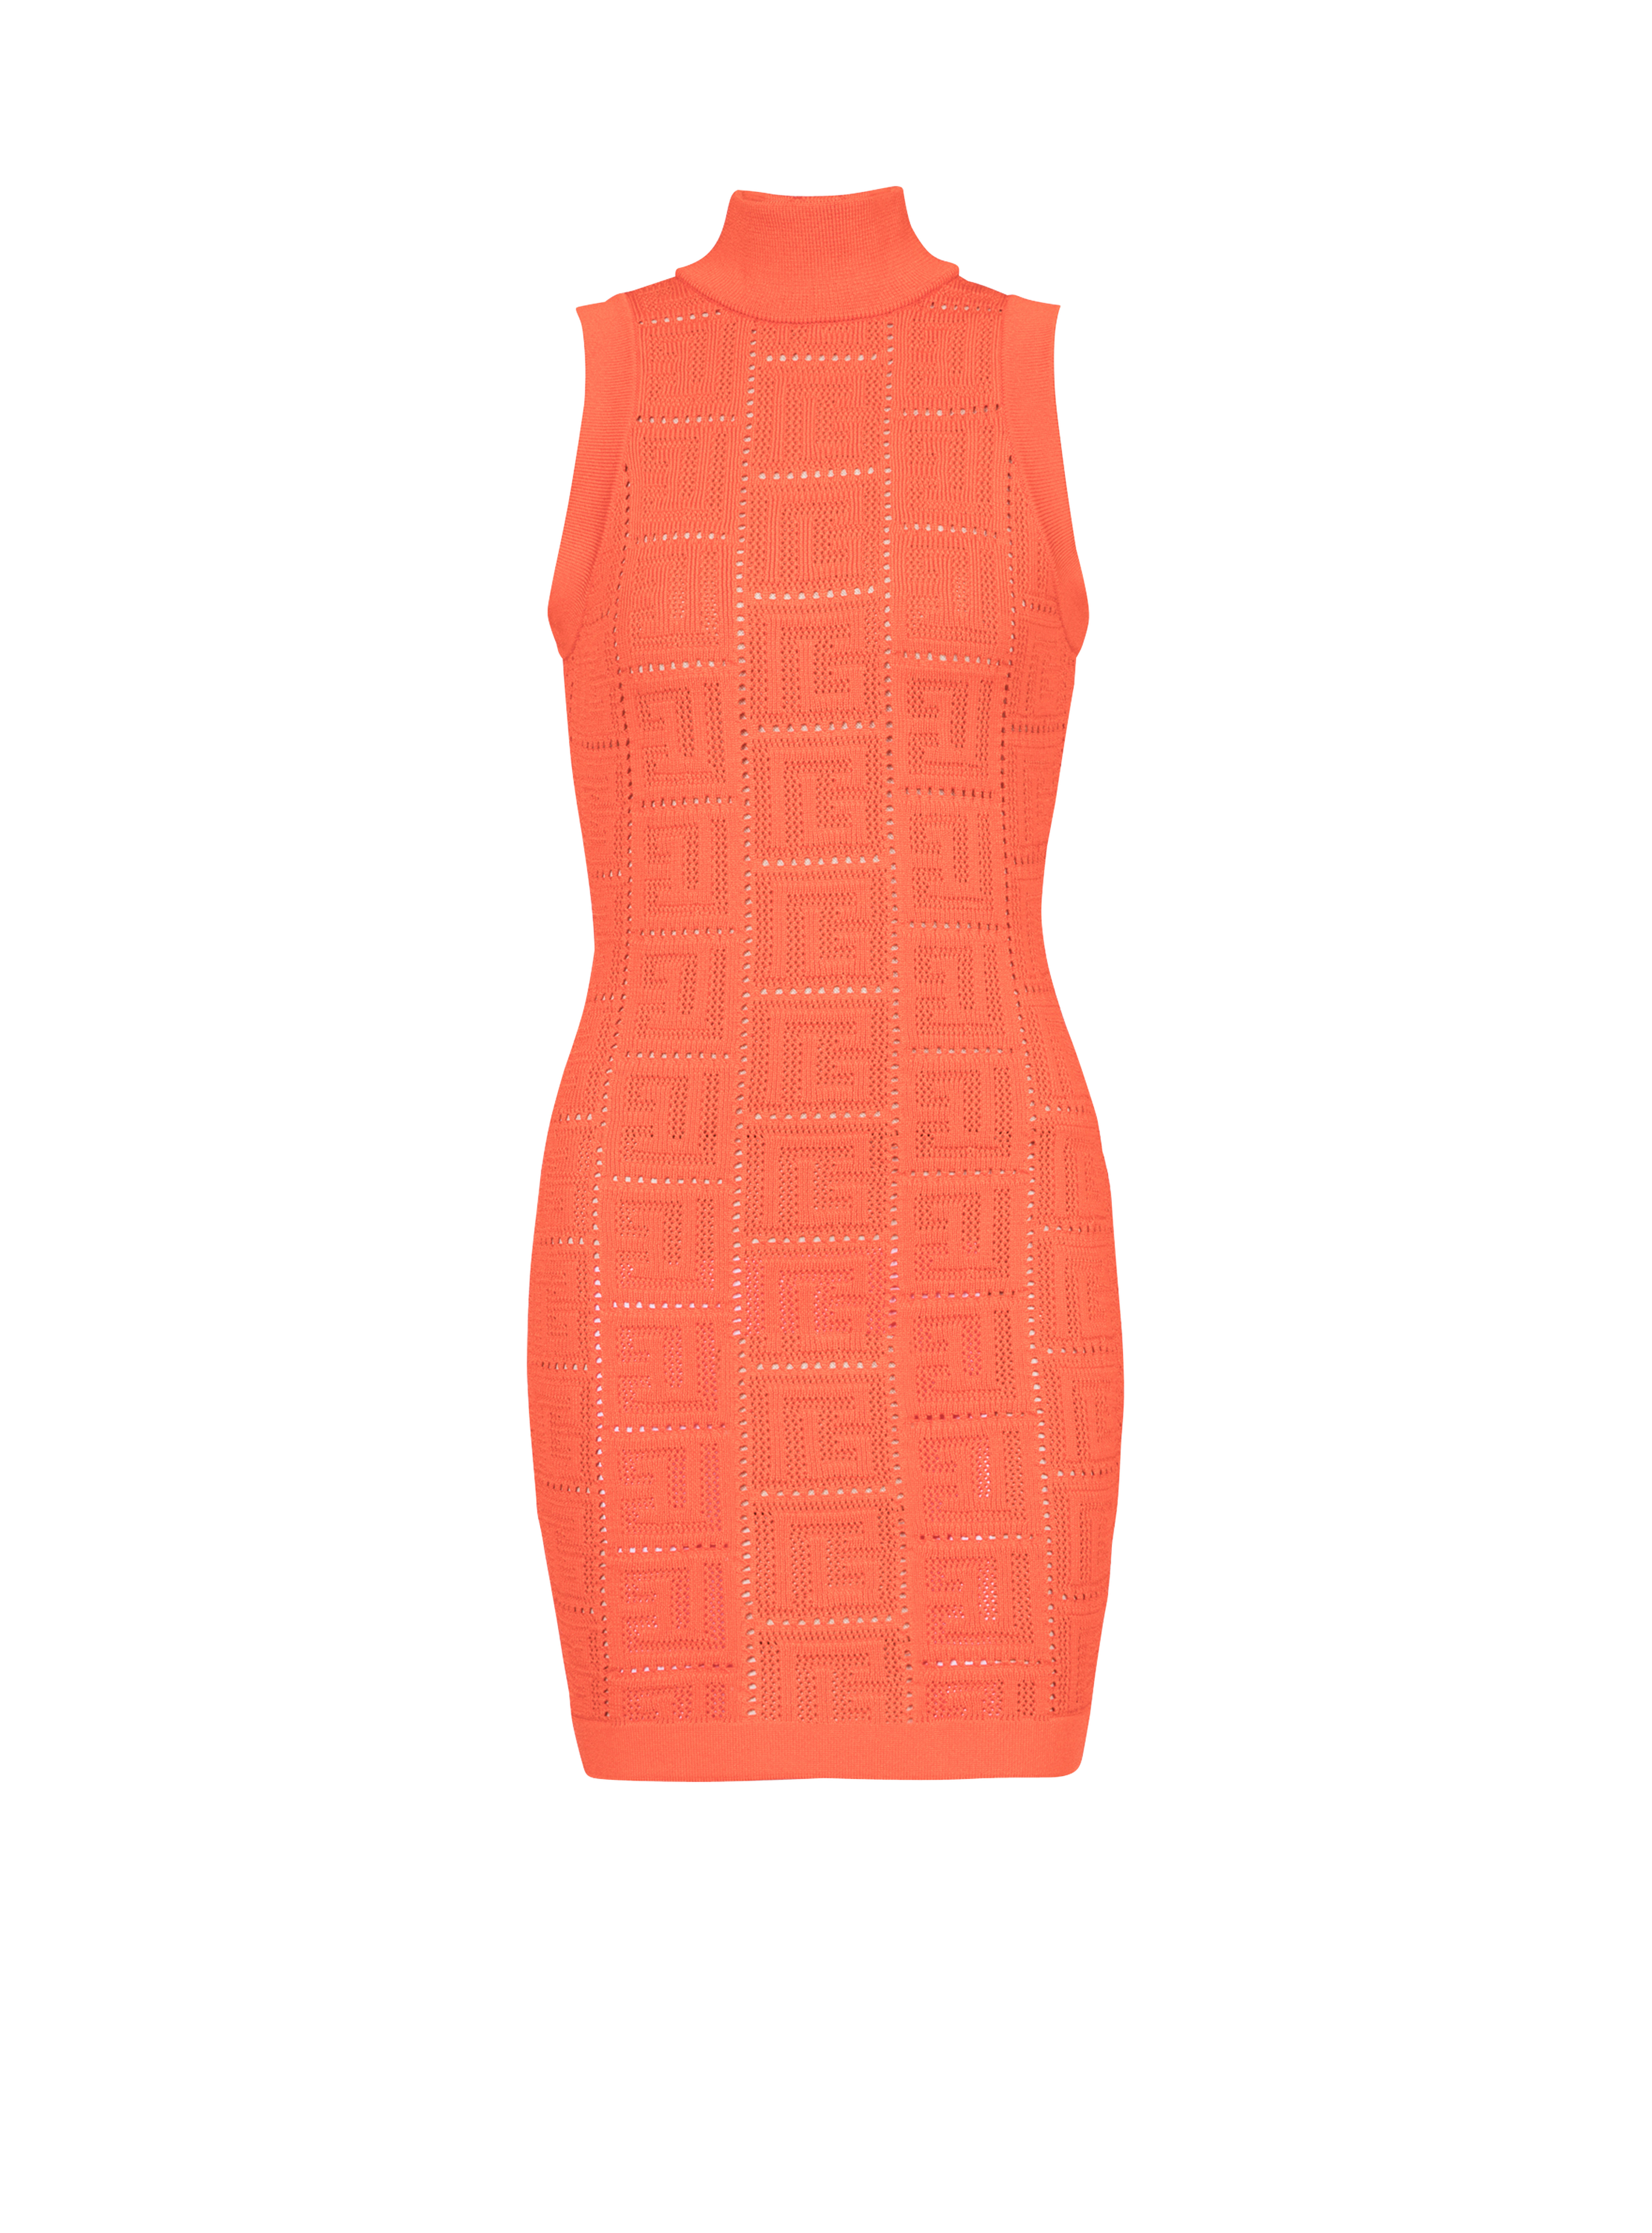 Short eco-designed knit dress with Balmain monogram, orange